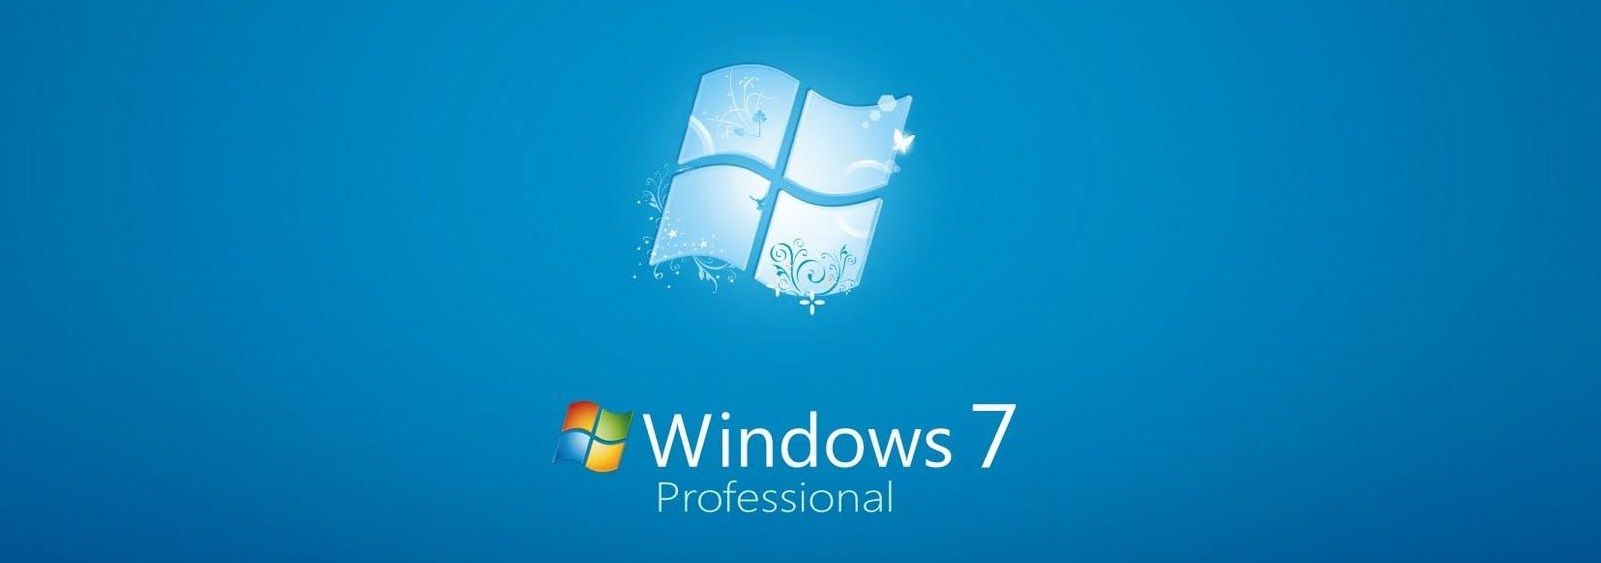 Windows 7 ha caducat: què implica per a les associacions?